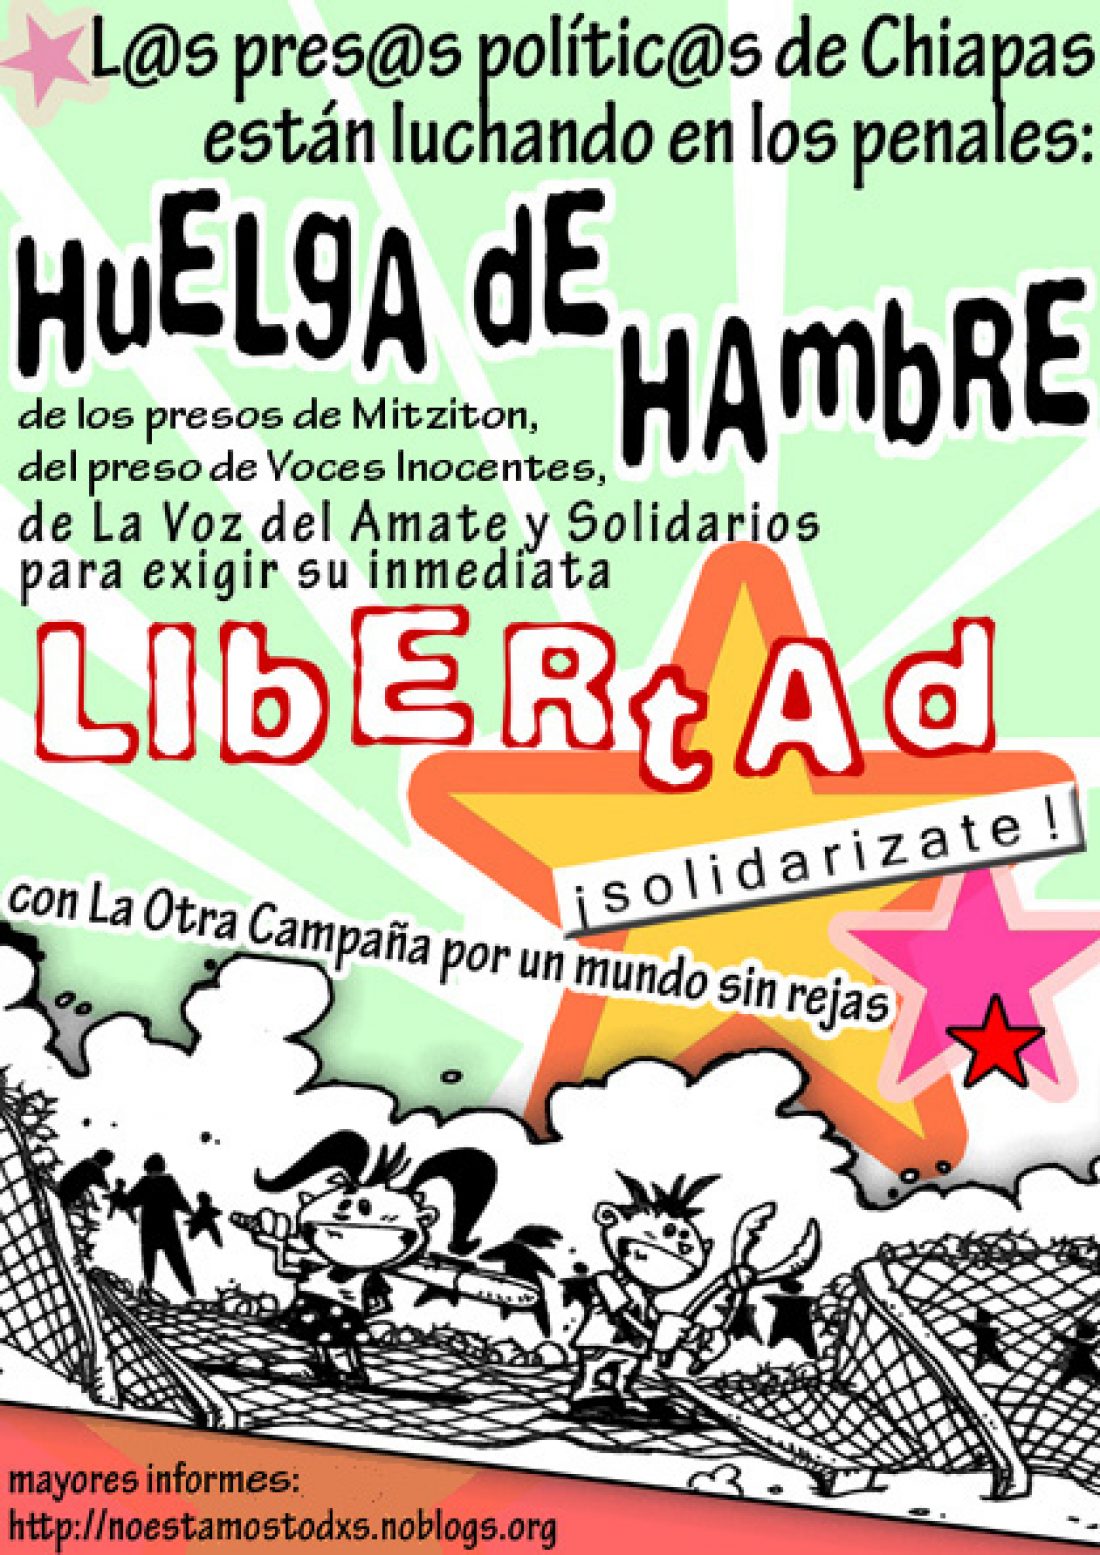 CGT organiza acciones locales en apoyo a la huelga de hambre de los presos polític@s de Chiapas